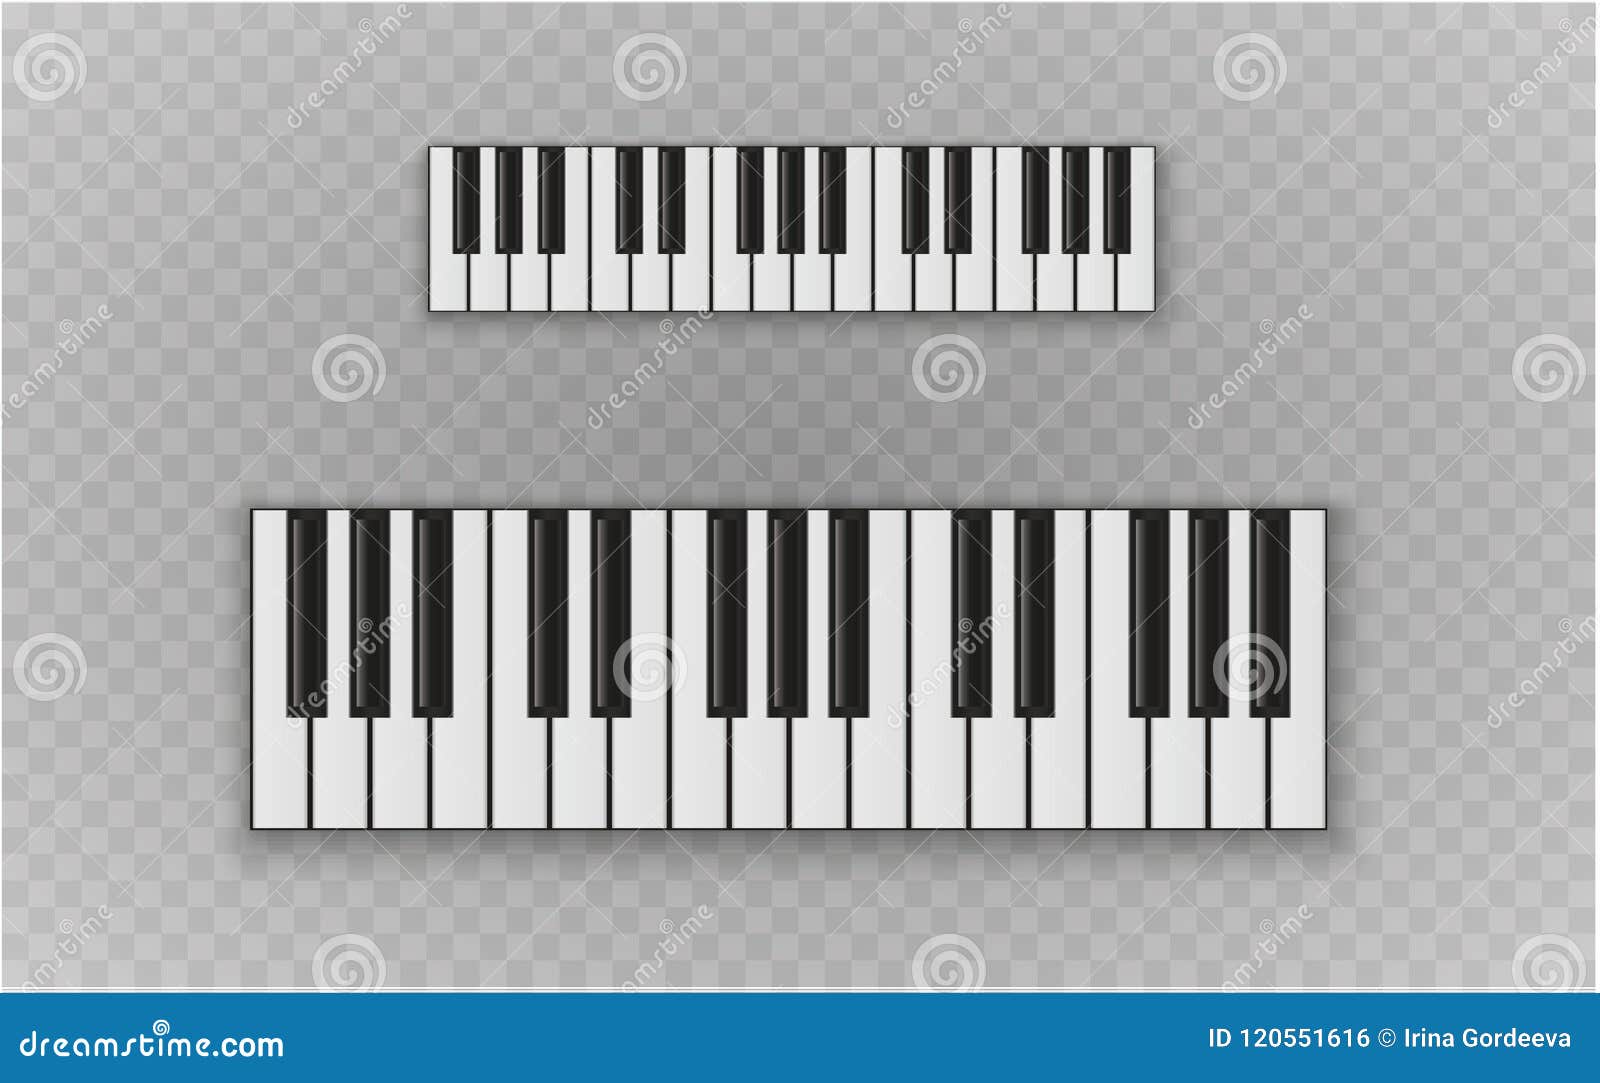 Cartoon Piano Keys Stock Illustrations – 1,036 Cartoon Piano Keys Stock  Illustrations, Vectors & Clipart - Dreamstime